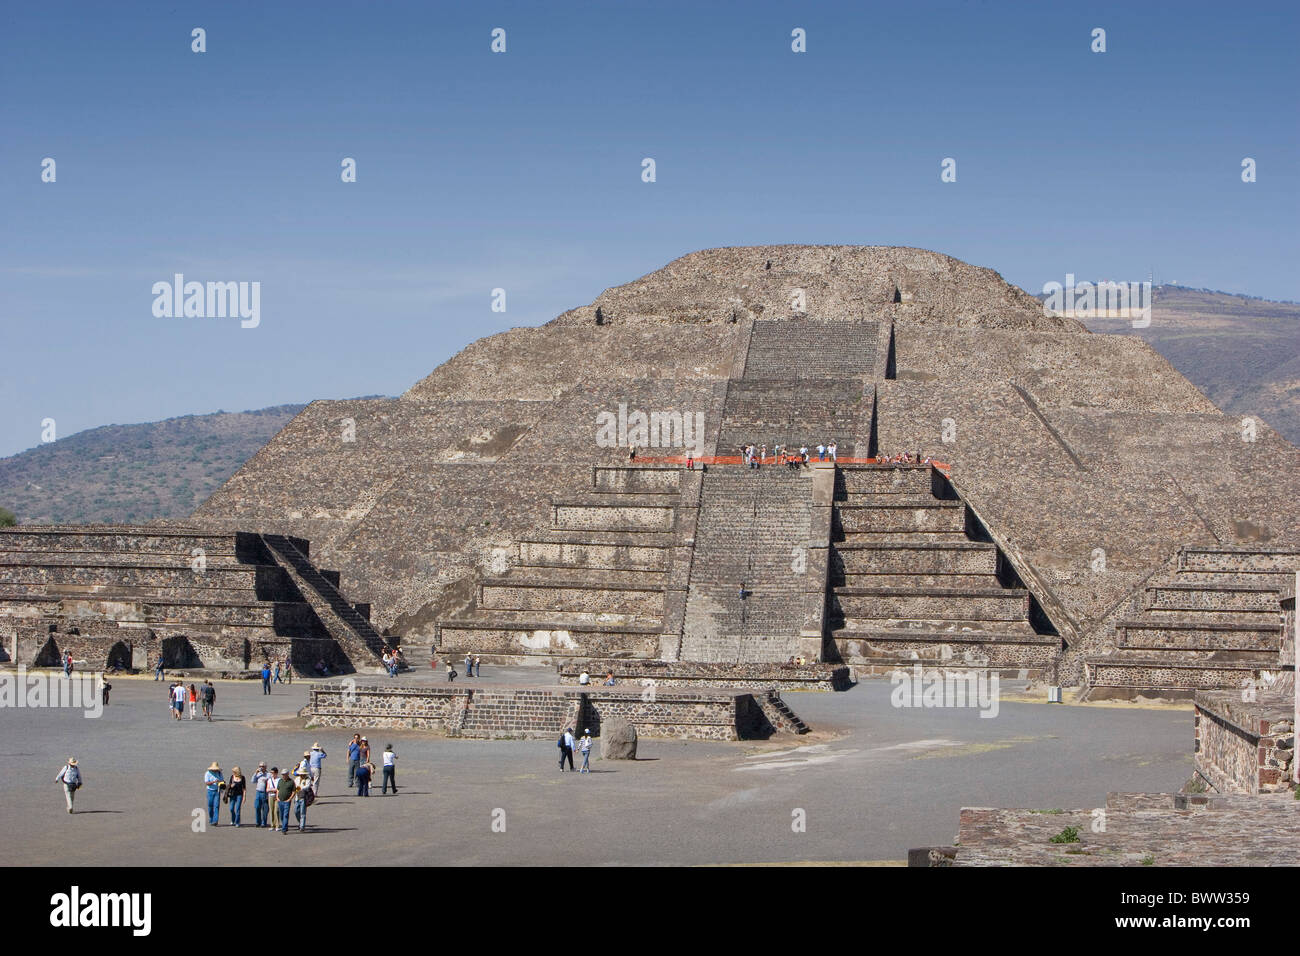 Mexique Amérique Centrale Amérique latine ruines Teotihuacan site du patrimoine mondial de l'Amérique du Sud de la pyramide de la Lune Februa Banque D'Images